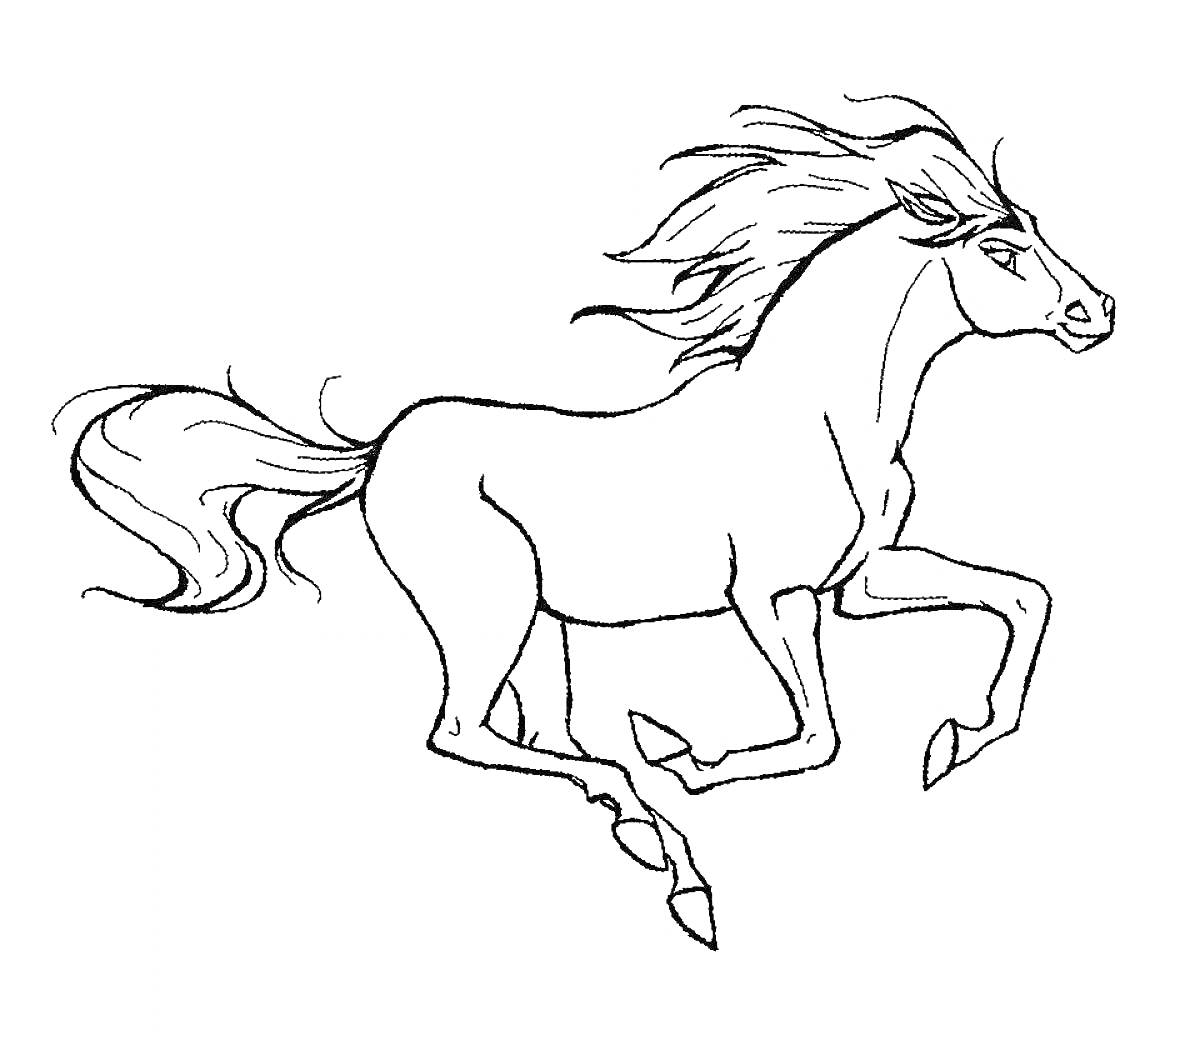 Скачущая лошадь с развевающейся гривой и хвостом